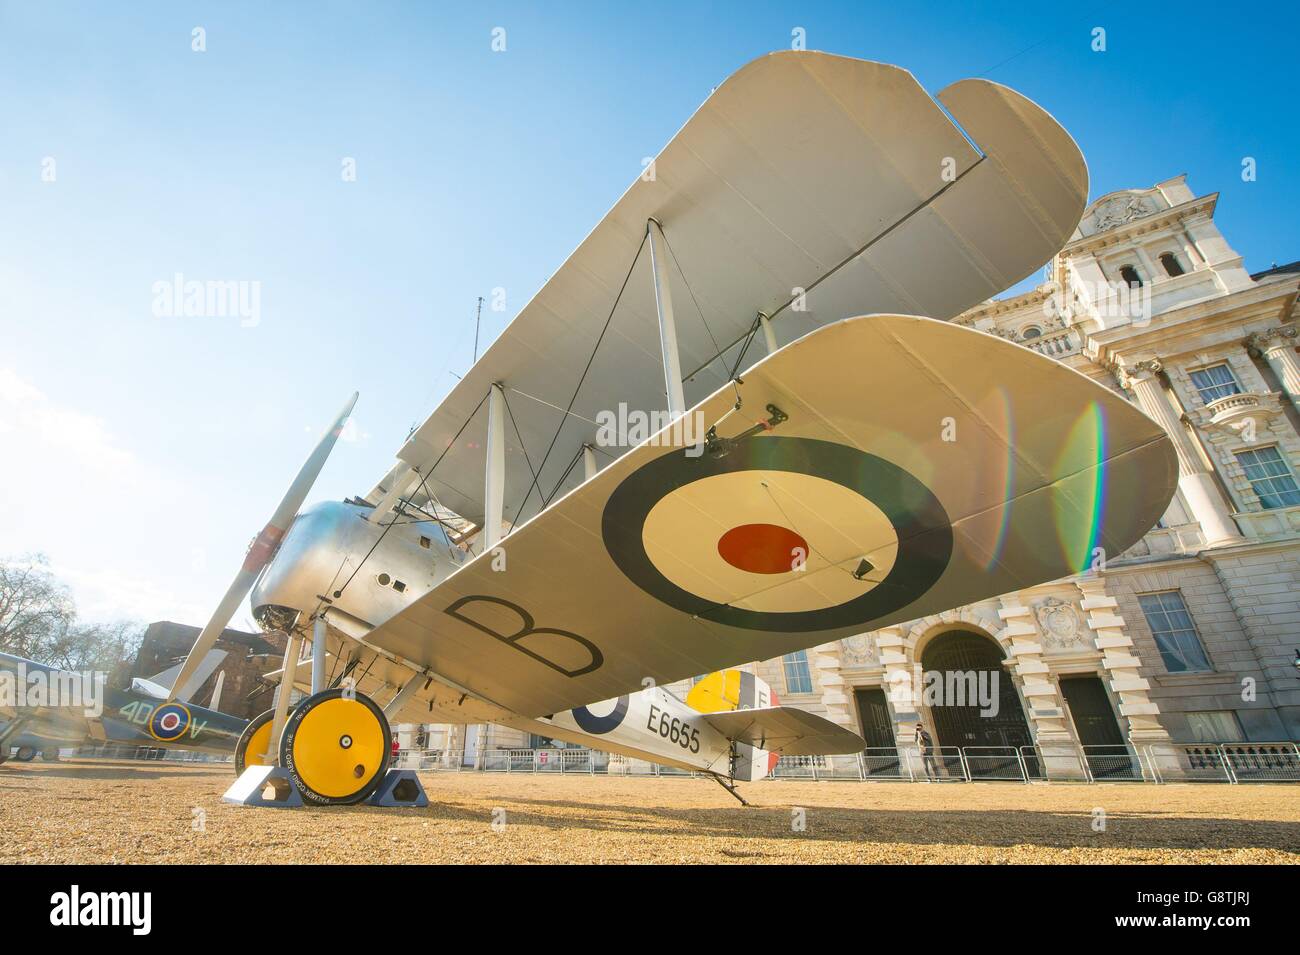 Un Sopwith Snipe è esposto nella Horse Guards Parade, nel centro di Londra, in vista del centesimo anniversario della RAF che è stata formata nel 2018. Foto Stock